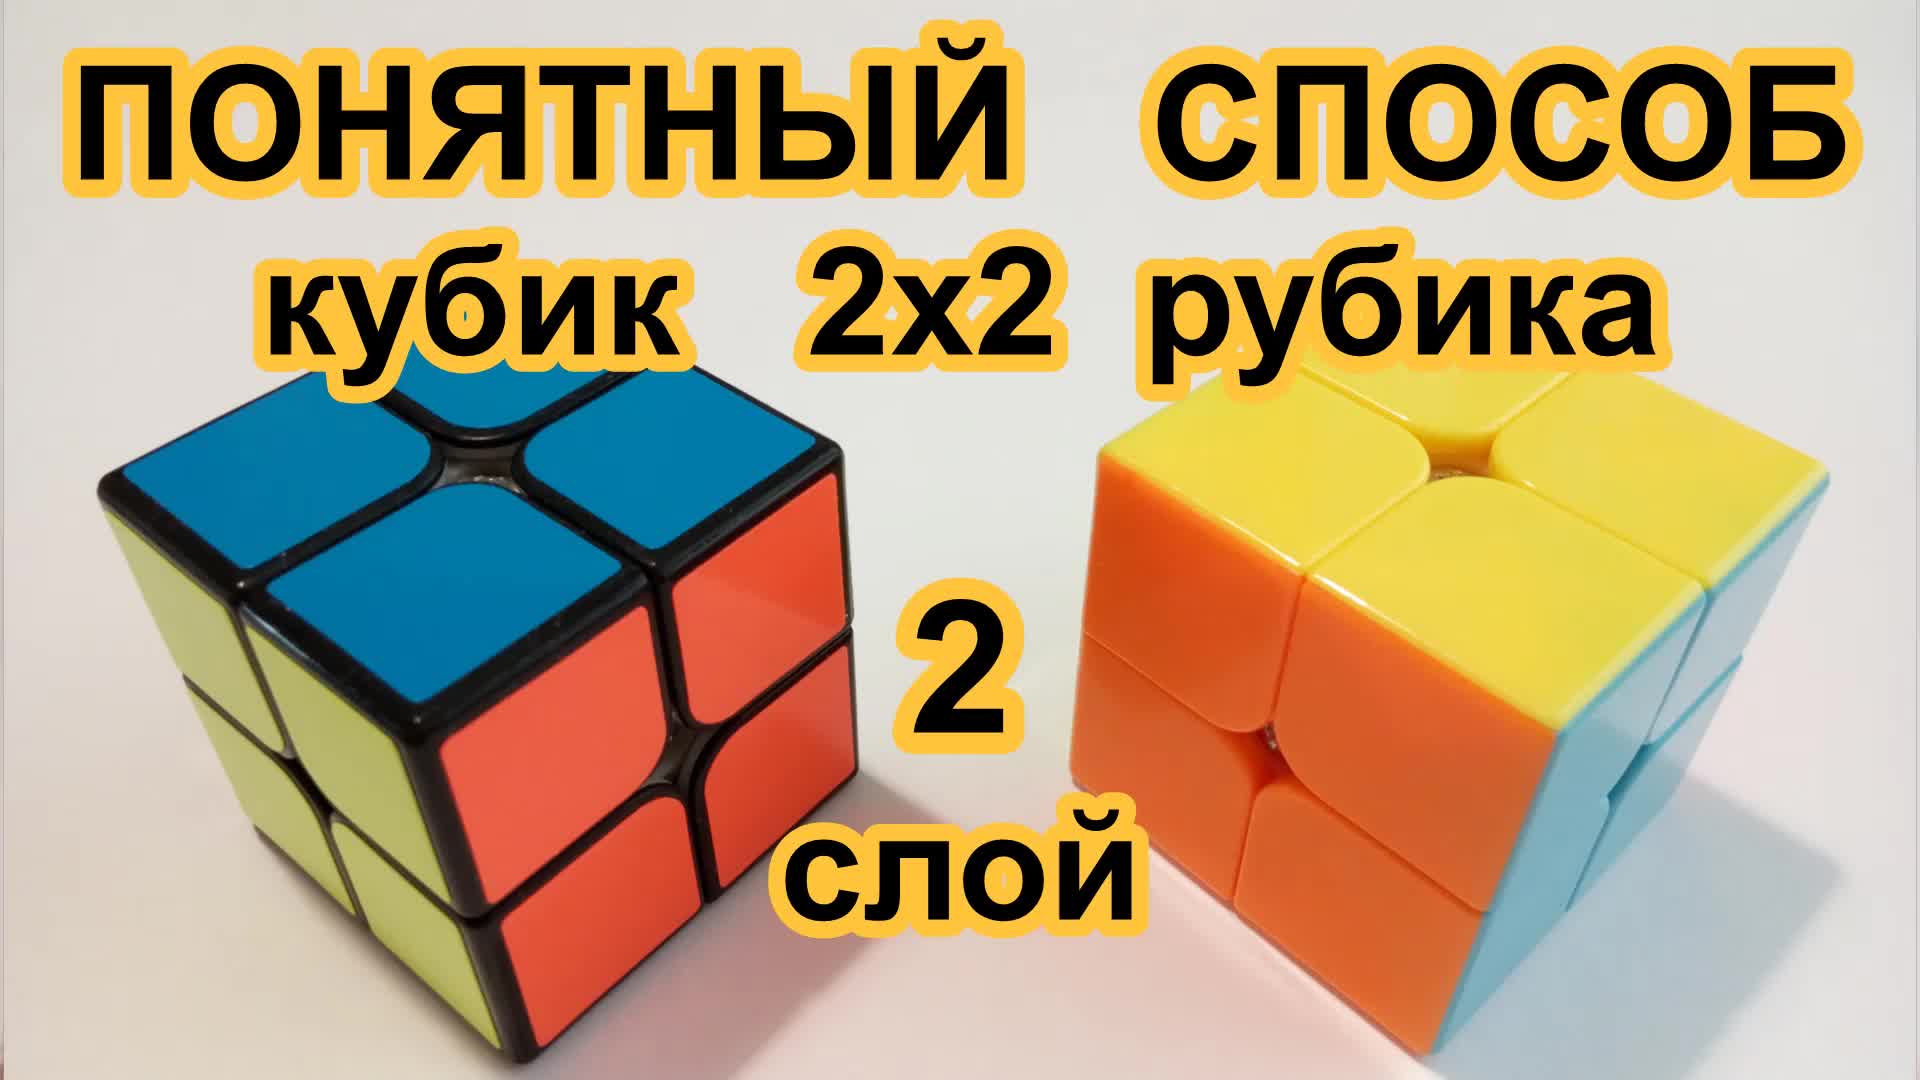 Как собрать кубик рубик 2x2. Кубик рубик 2x2. Сборка кубика Рубика 2 на 2. Кубик-Рубика 2х2 сборка для новичка схема. Алгоритм кубика Рубика 2х2.